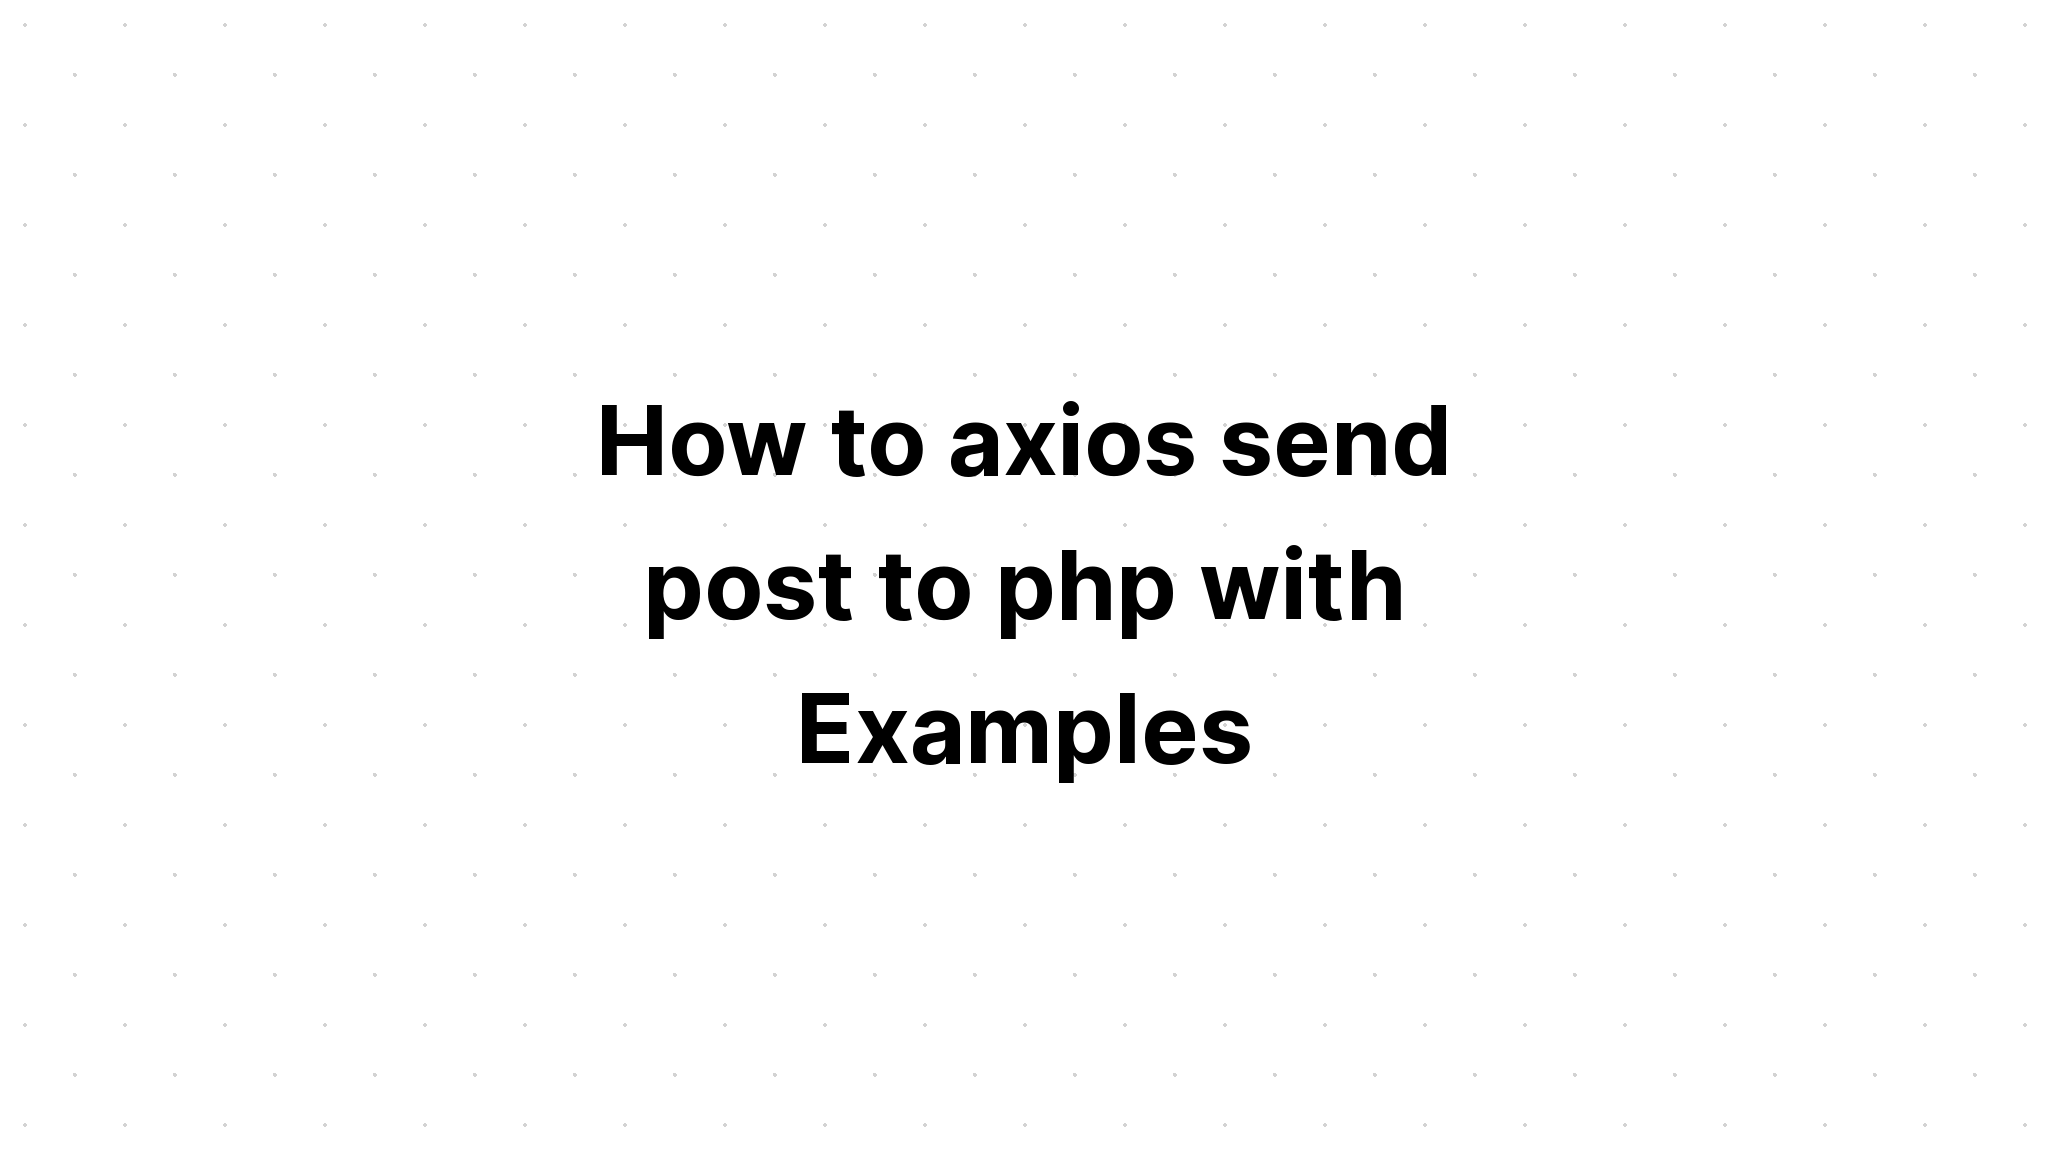 Cara axios mengirim posting ke php dengan Contoh